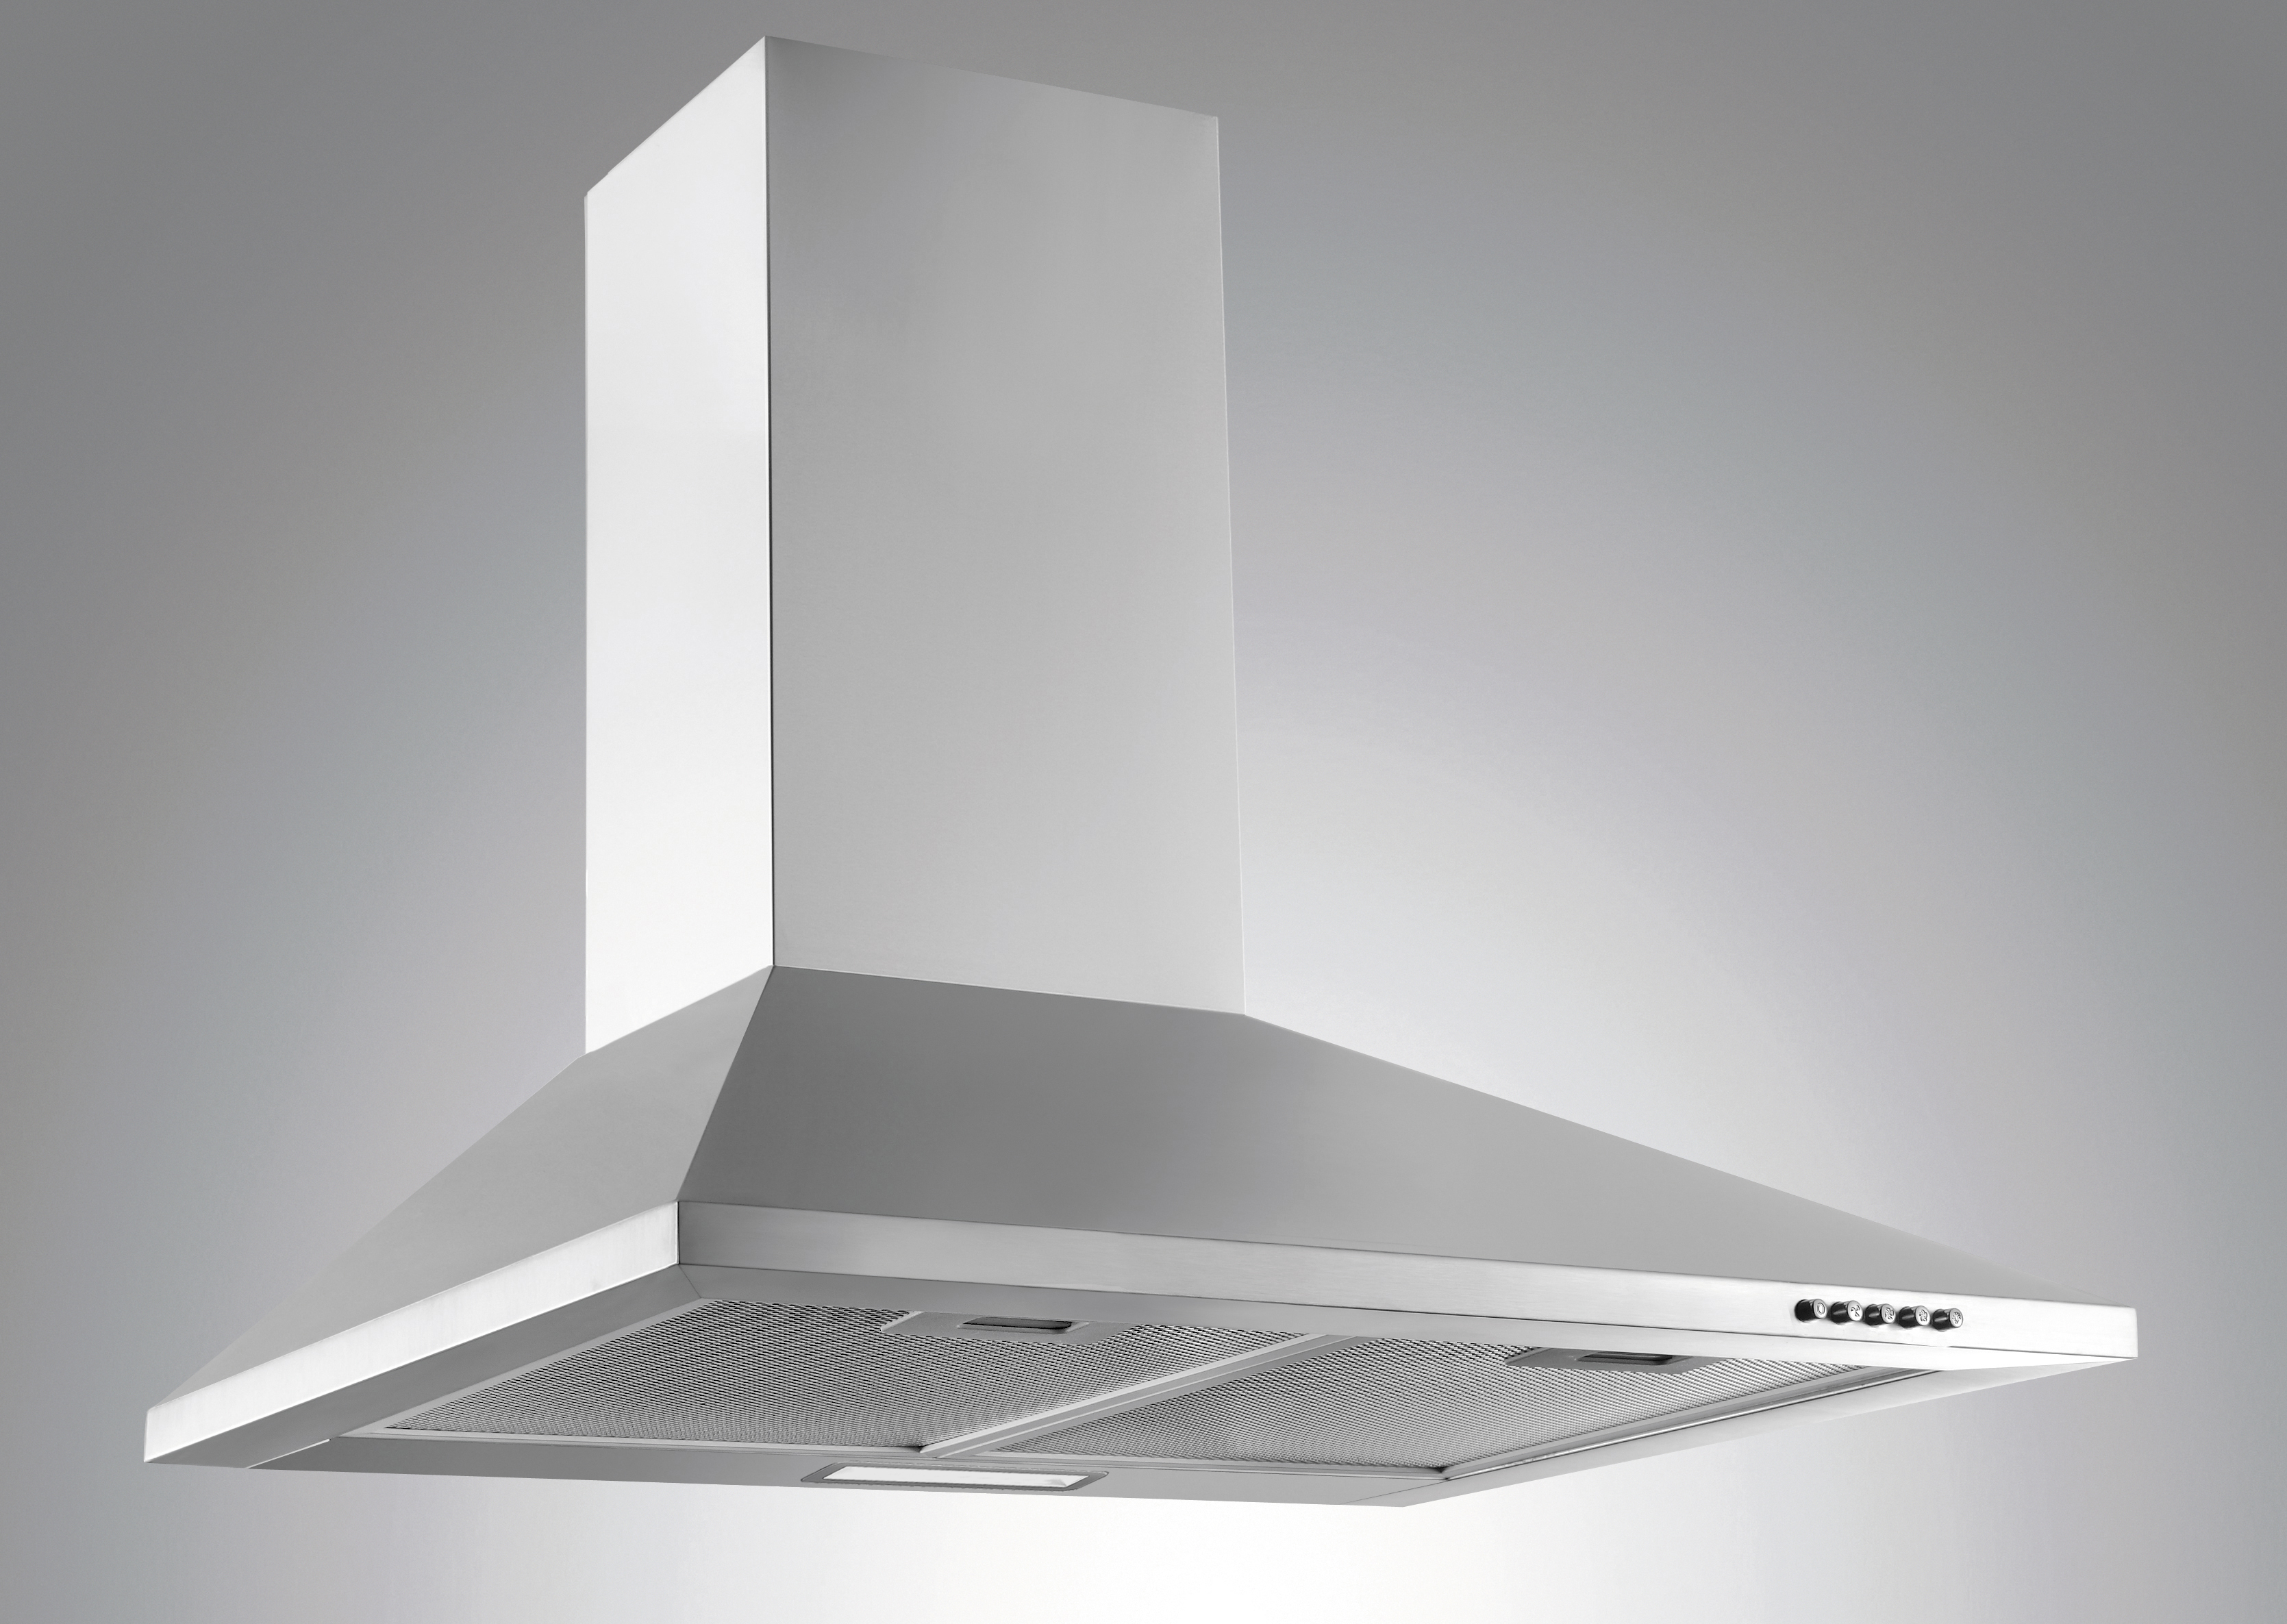 Menke Küchenzeile mit E-Geräten & Geschirrspüler - 270 cm breit – Smart Lack Hochglanz Lava